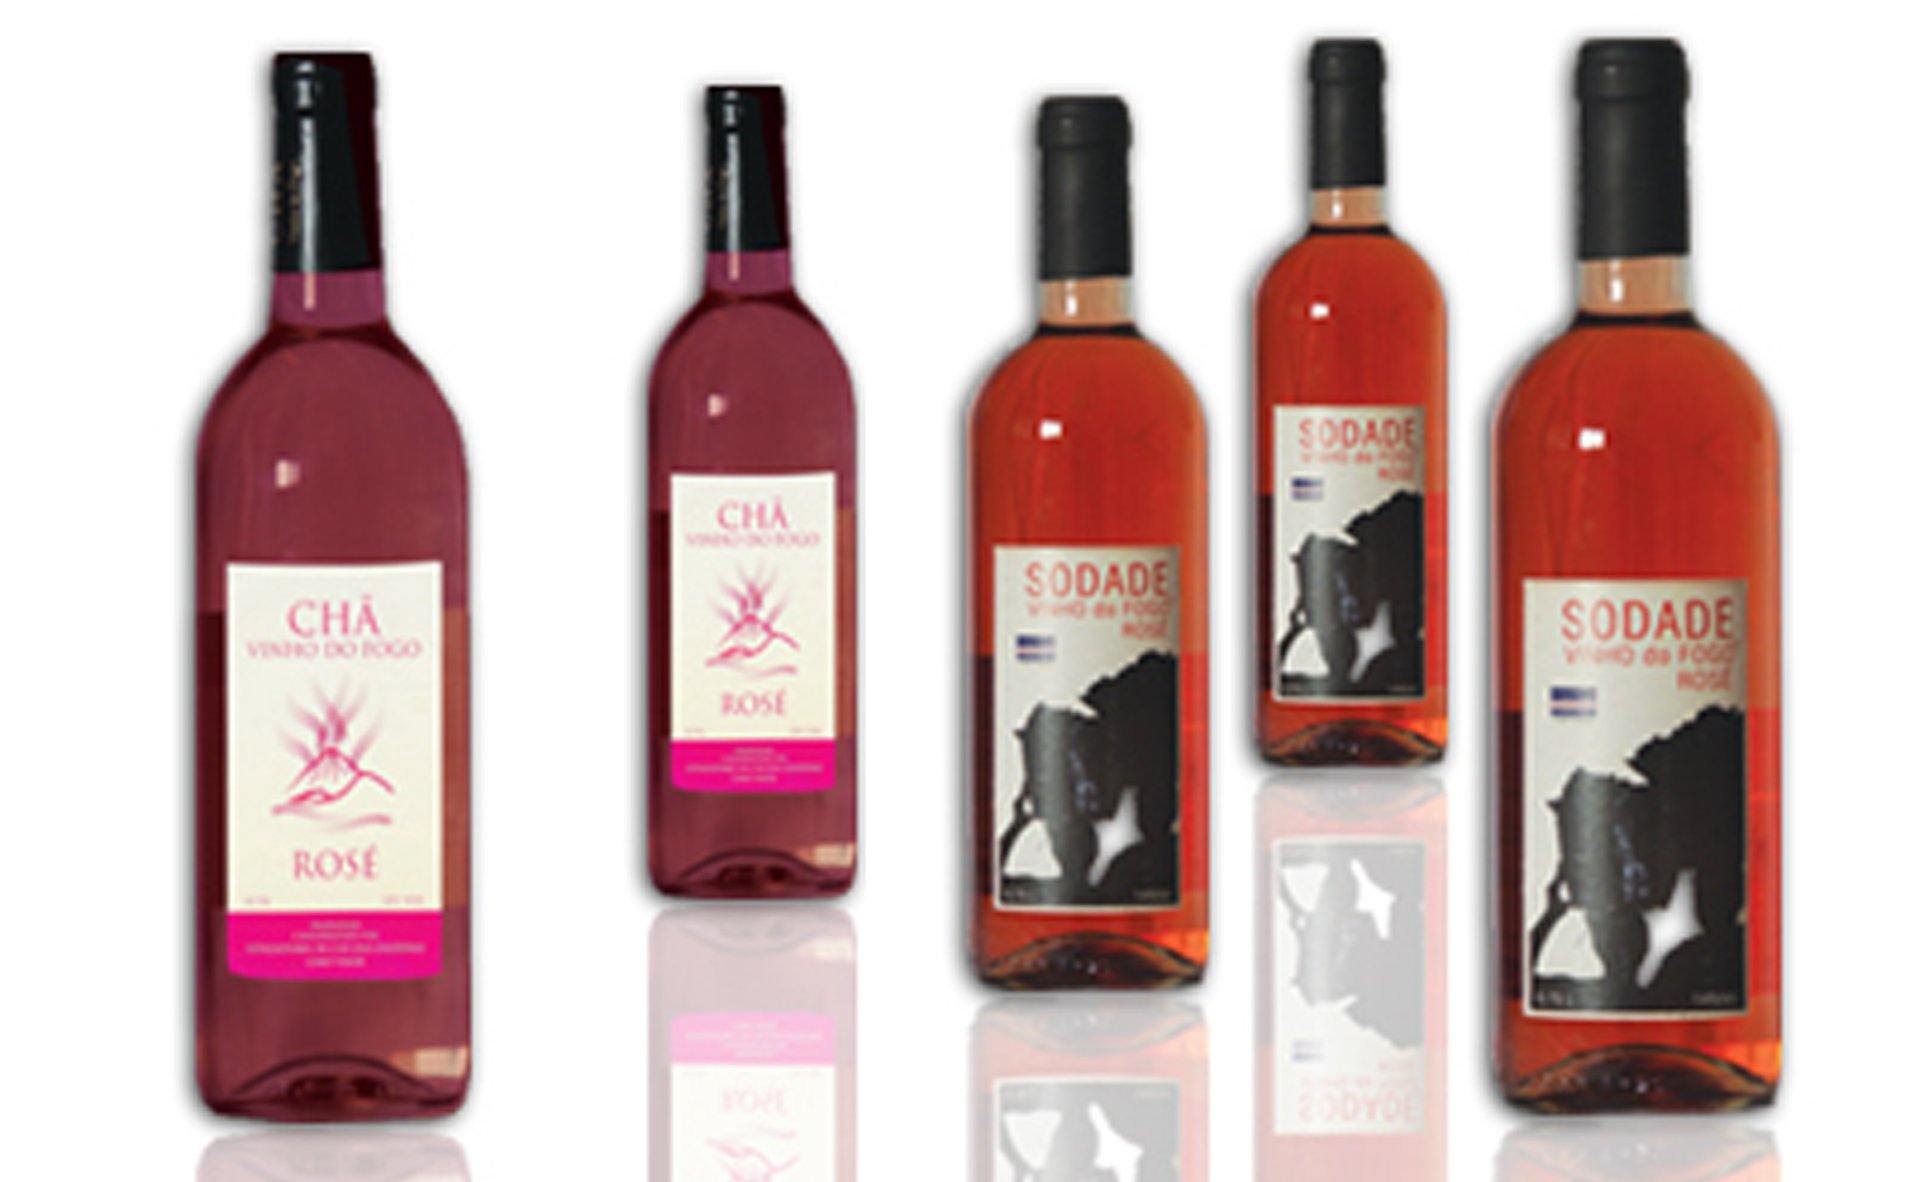 Obr 8 Produkce růžového vína ze soukromého vinařství Eduína Lopese "Sodade" a produkce družstevního vinařství „Chã das Caldeiras“